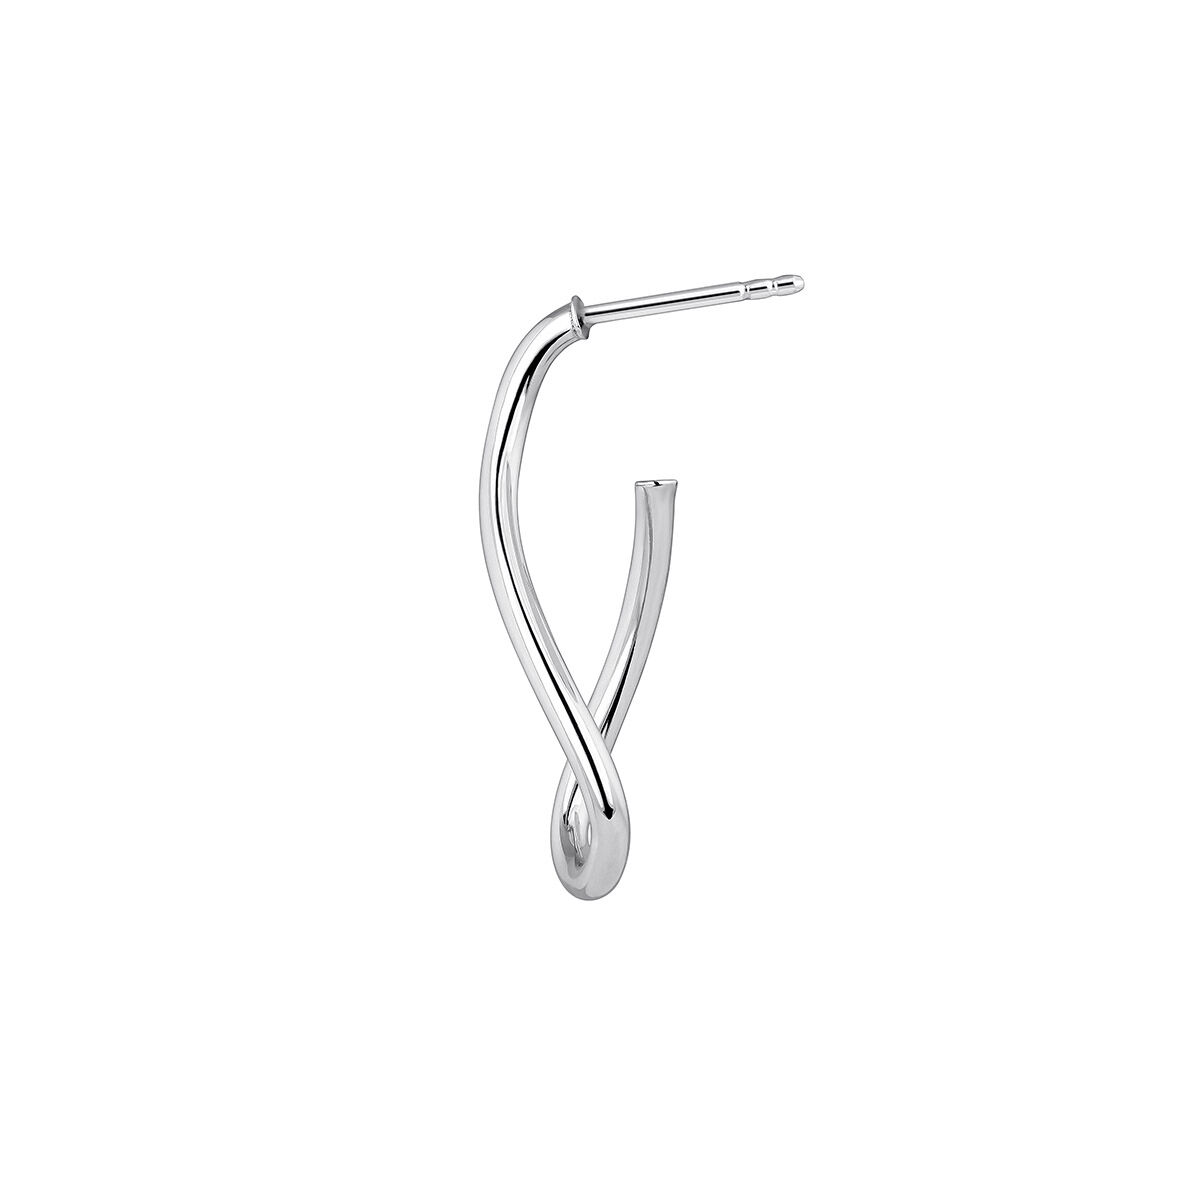 Medium thin wavy hoop earrings in silver, J05135-01, hi-res